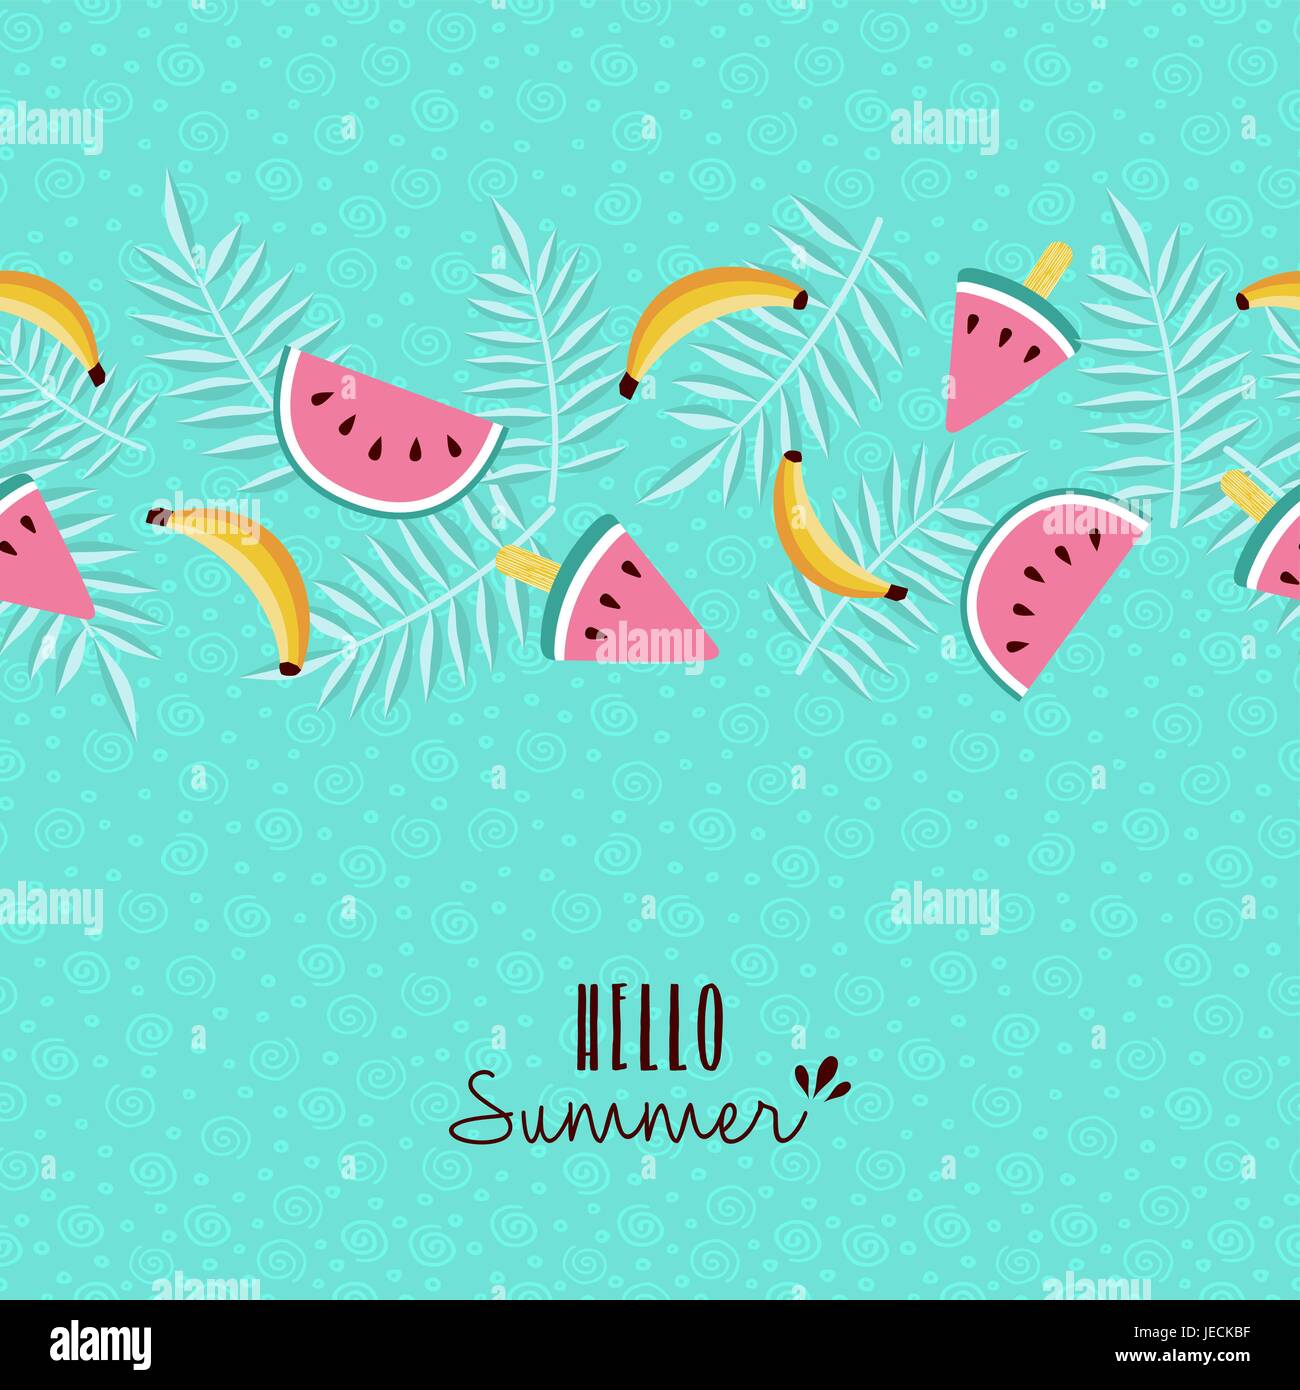 Glückliche Sommer Grußkarte gestalten mit tropischen nahtlose Muster und Typografie Zitat. Enthält Banane, Wassermelone, Palm Leaf. EPS10 Vektor. Stock Vektor